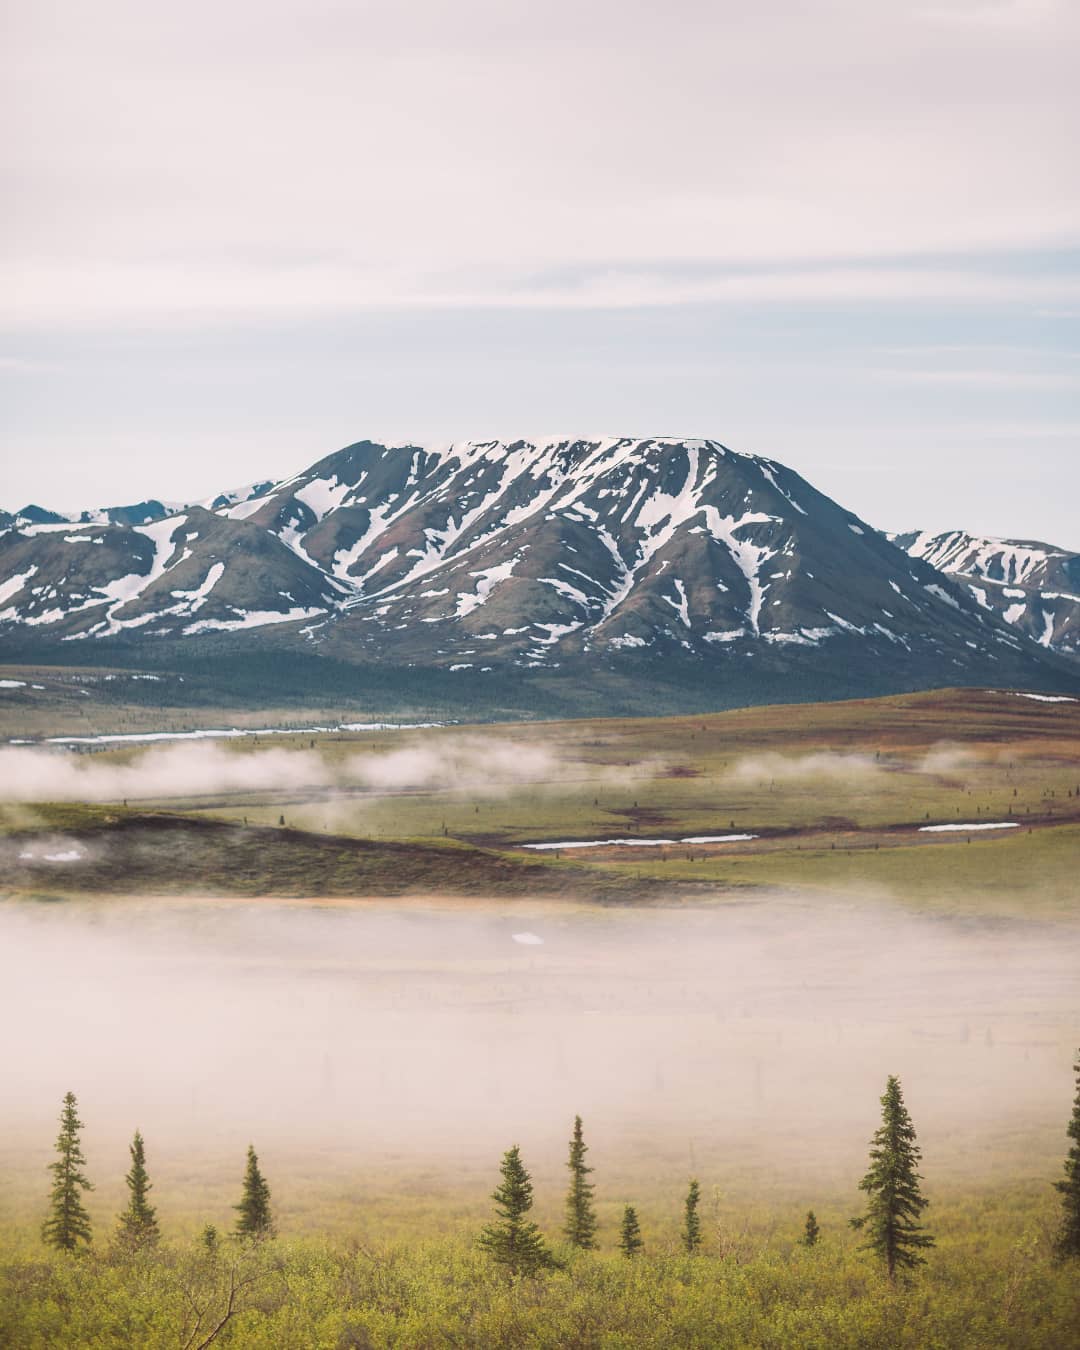 📷 Nitish Meena
📍 Denali National Park 🇺🇸
✒️ 'Colores de Alaska', por Nitish Meena
«A medida que nuestro recorrido avanza, aparecen en nuestras miradas nuevas escenas, presentadas con un delicado y mágico movimiento. El ojo se ve llamado por la silueta de las montañas situadas ahí a lo lejos, limitadas en ambos costados por tierras de una variedad fascinante: una tras otra se vuelven más débiles y etéreas a medida que ganan distancia respecto nuestro autobús.»